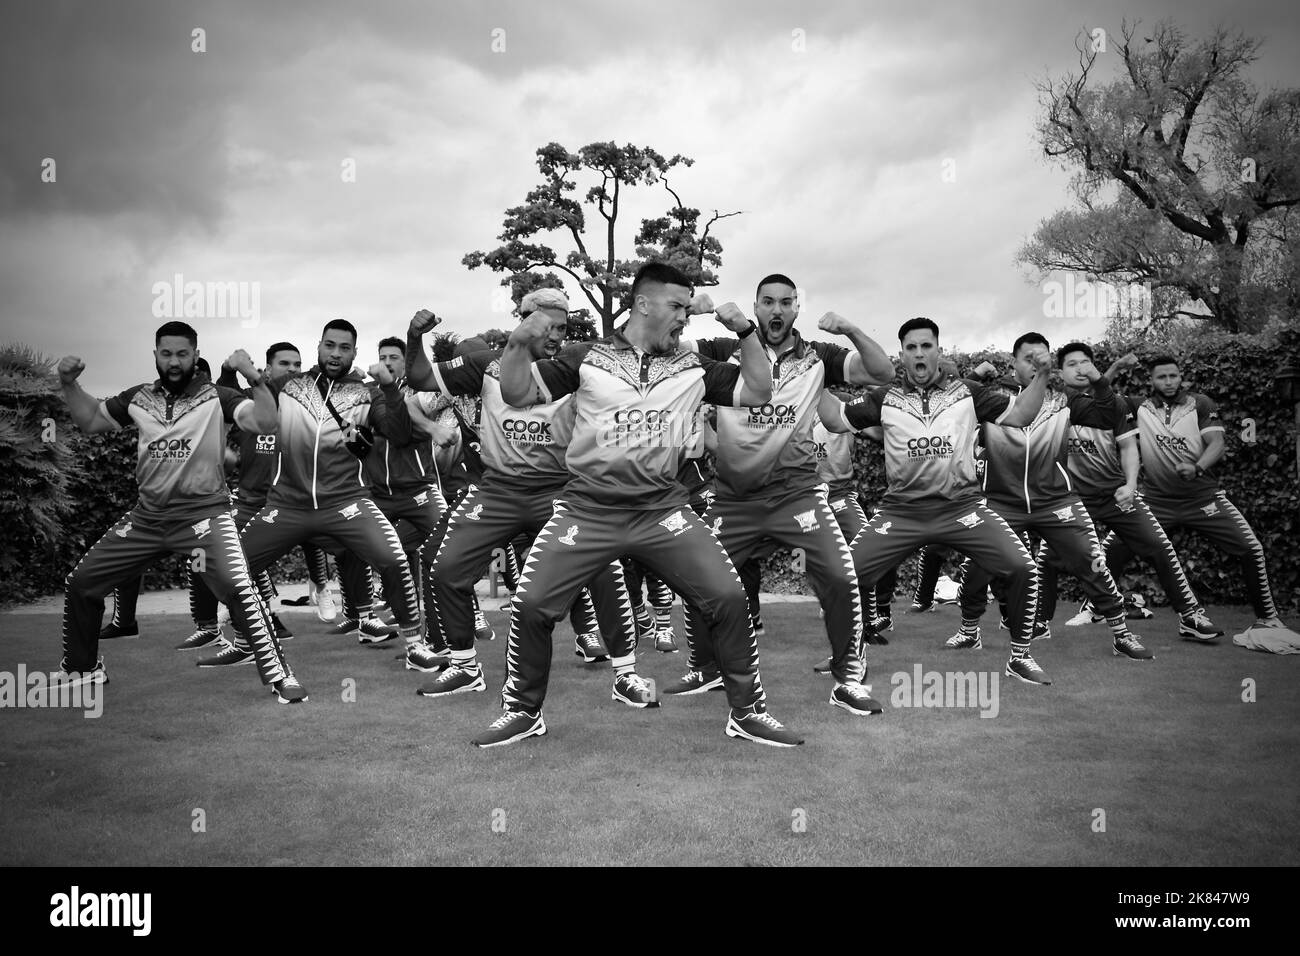 Noir et blanc, image dramatique de l'équipe masculine de rugby à XV des îles Cook, qui a exécuté le Haka au Rockliffe Hall Hurworth, Darlington, Royaume-Uni. Banque D'Images